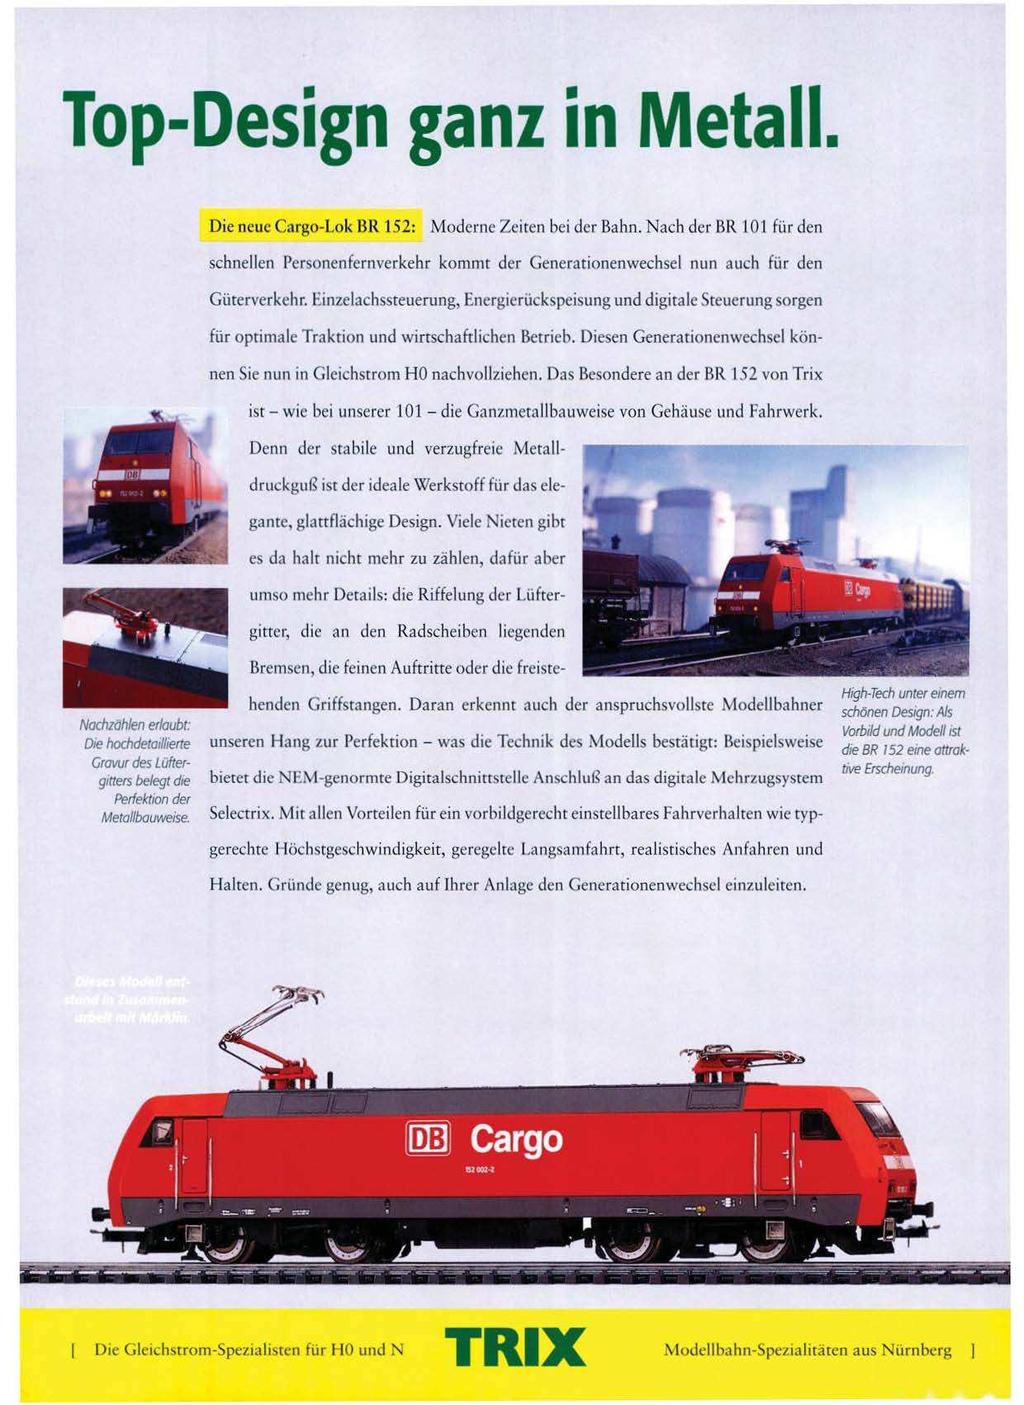 Top-Design ganz in Metall. Die neue Cargo-Lok BR 152: Moderne Zeiten bei der Bahn. Nach der ßR 101 für den schnellen Personenfernverkehr kommt der Generationenwechsel nun auch für den Güterverkehr.